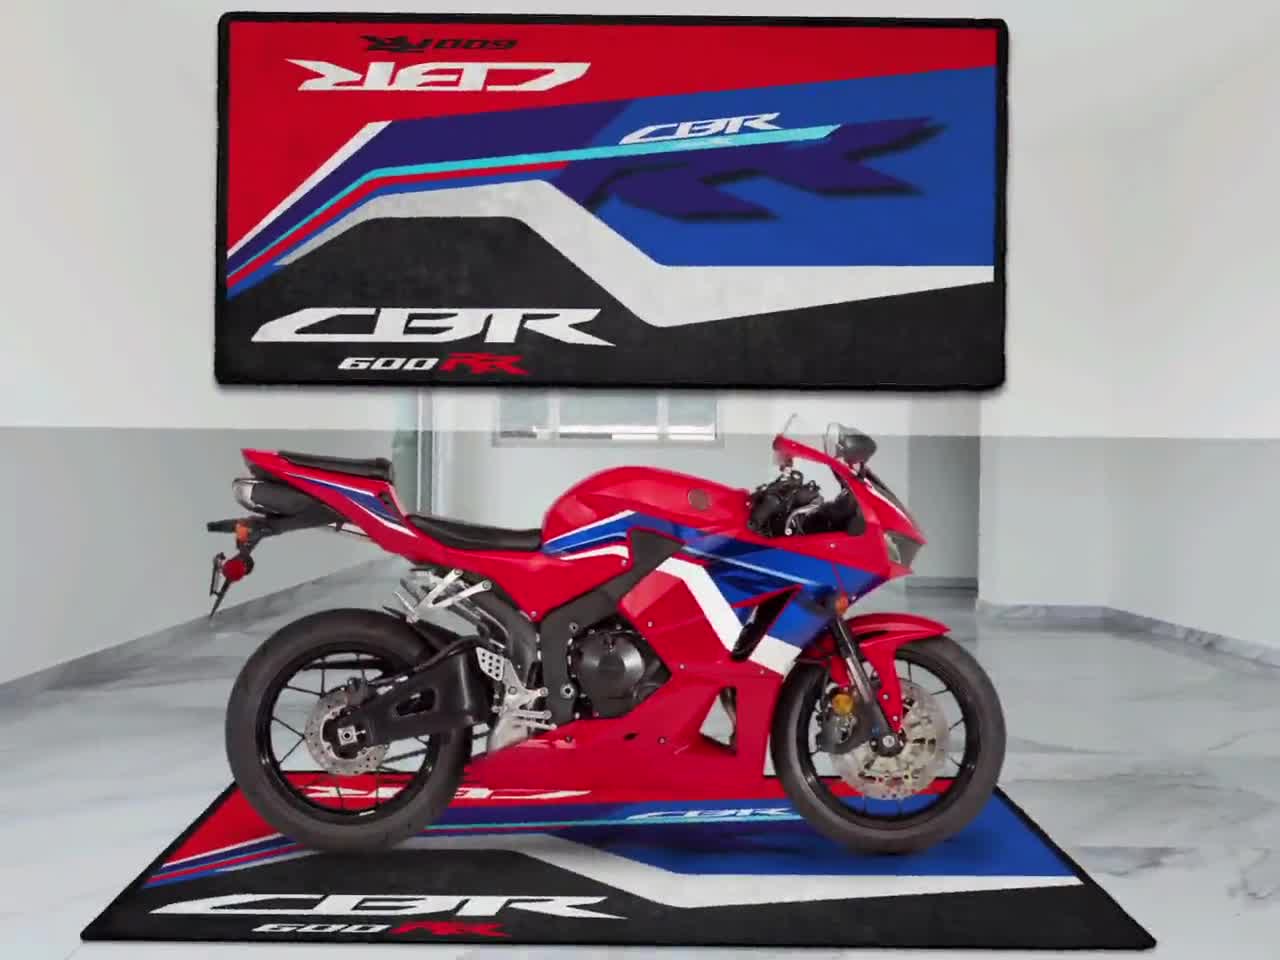 Vistazo rápido: Alfombras personalizadas para moto DMX Designs